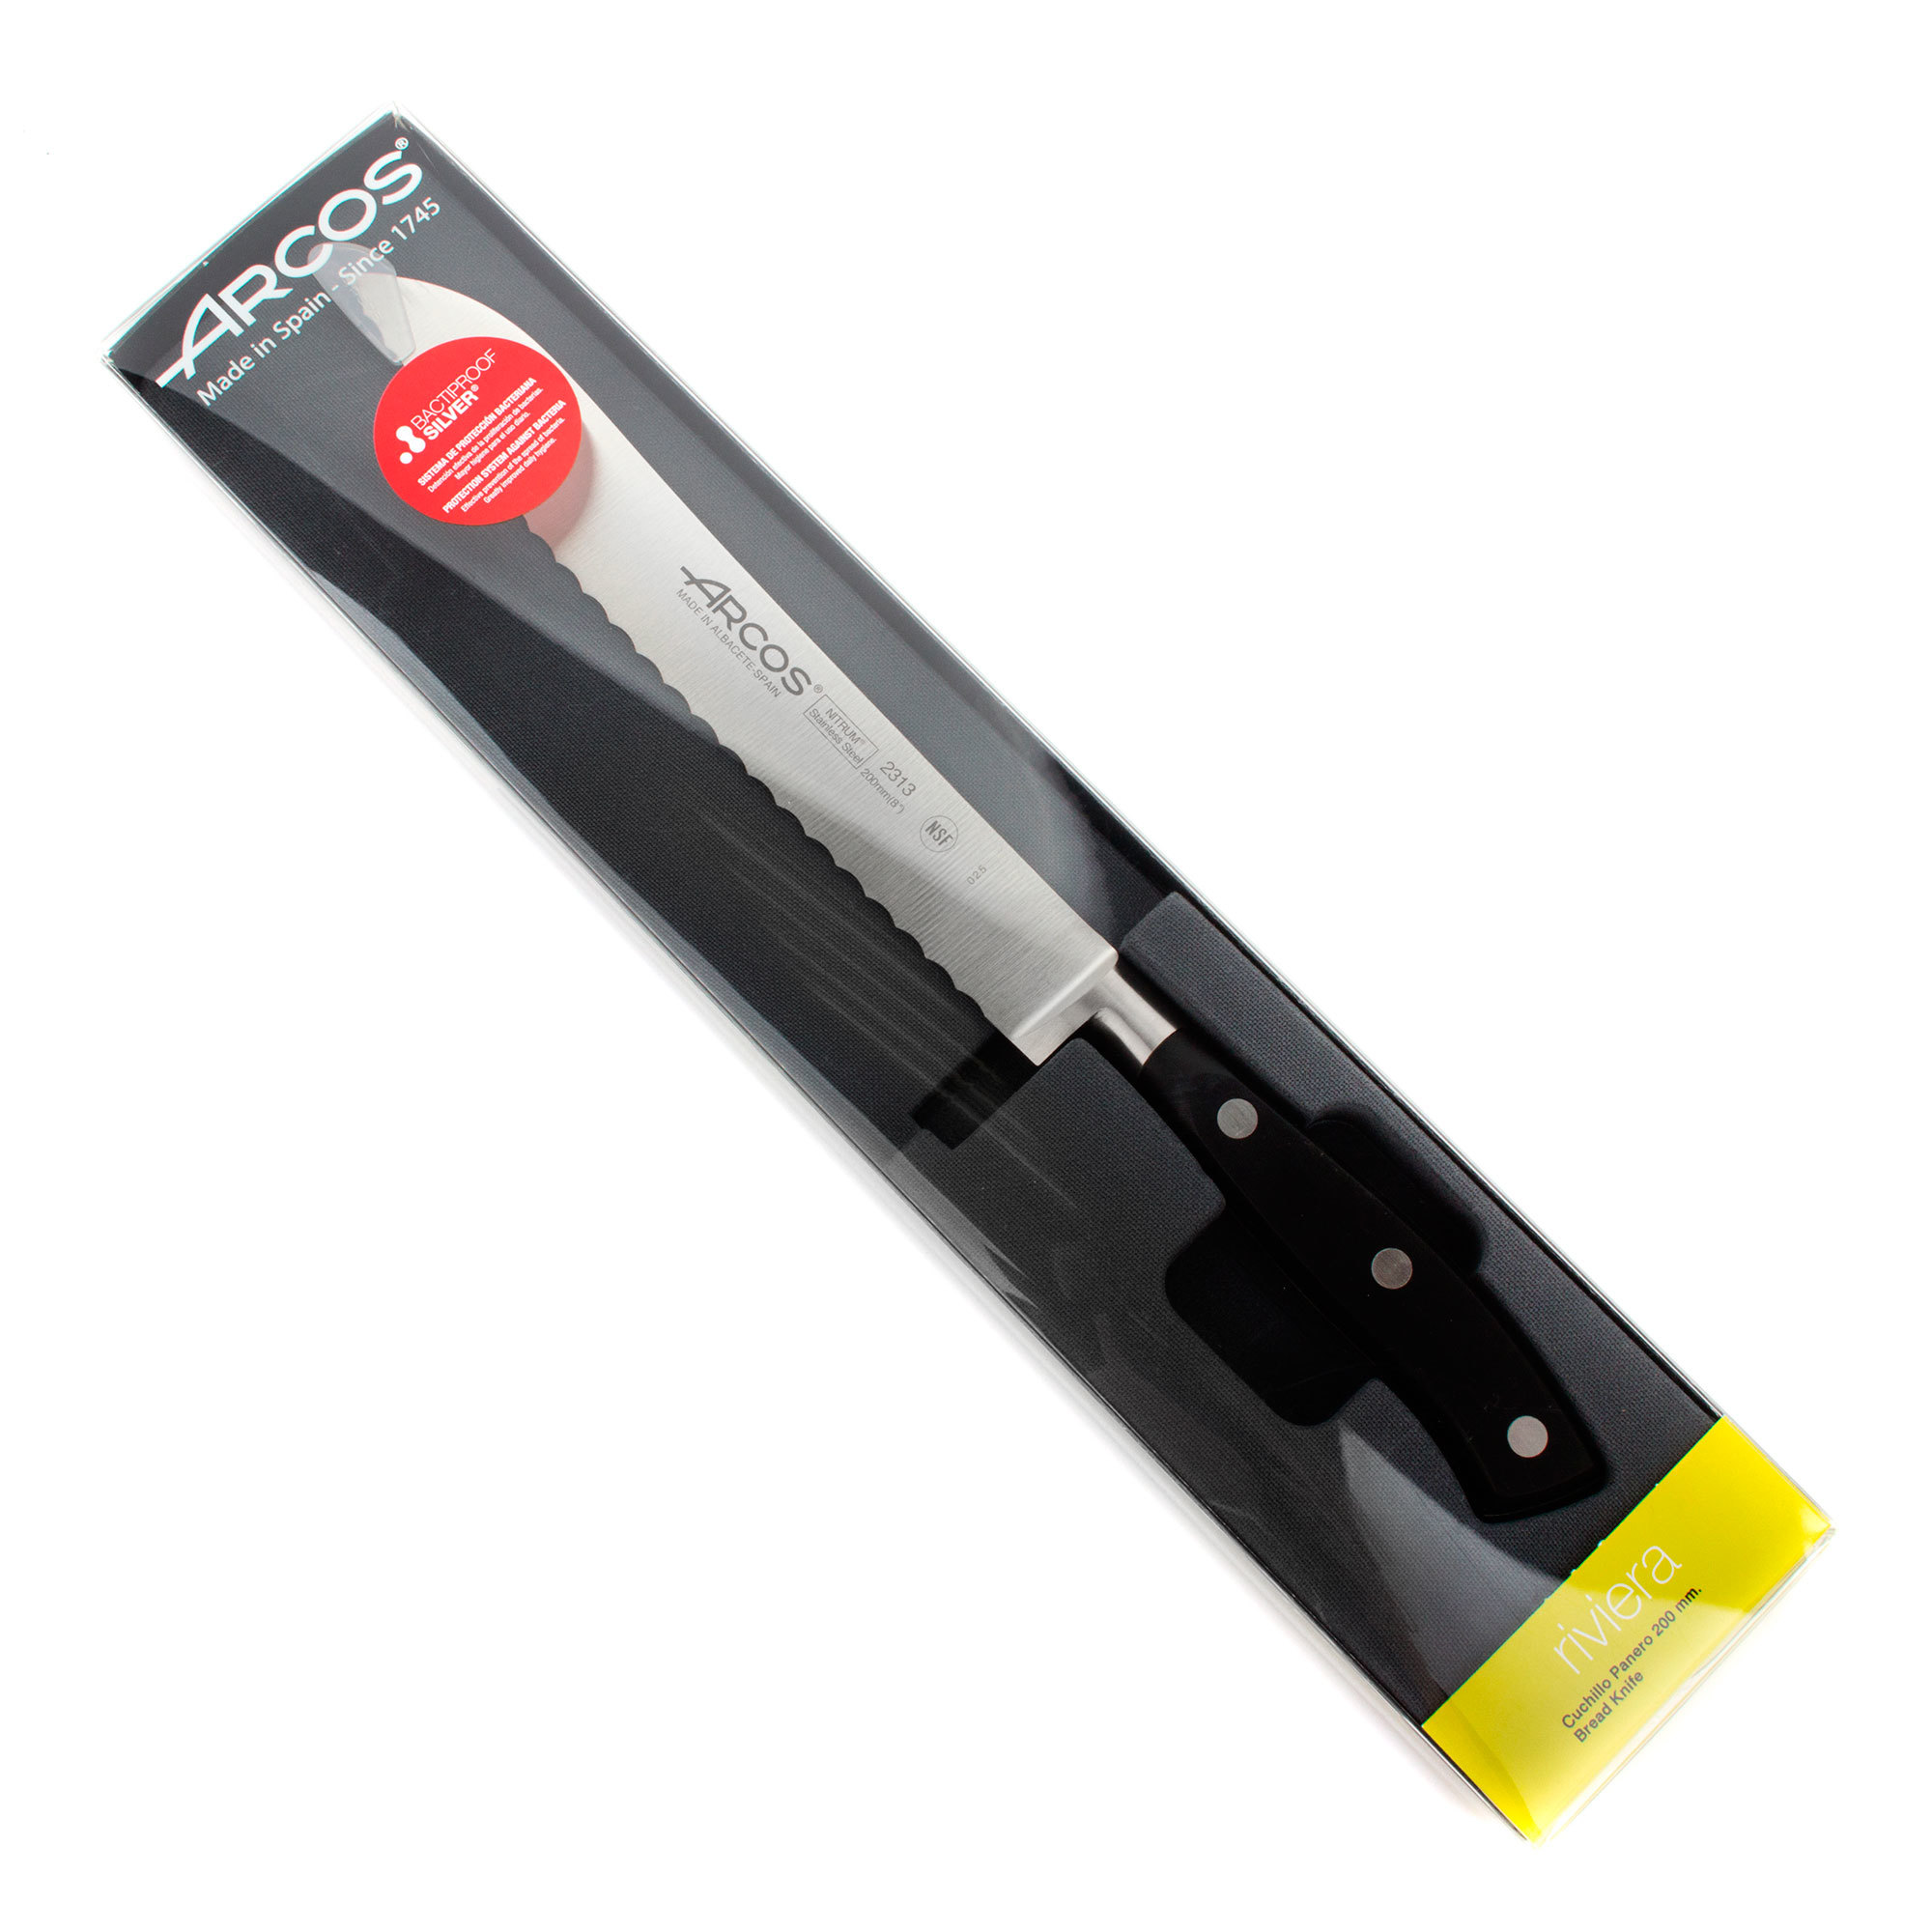 Нож кухонный стальной овощной 10 см ARCOS Riviera арт. 2302